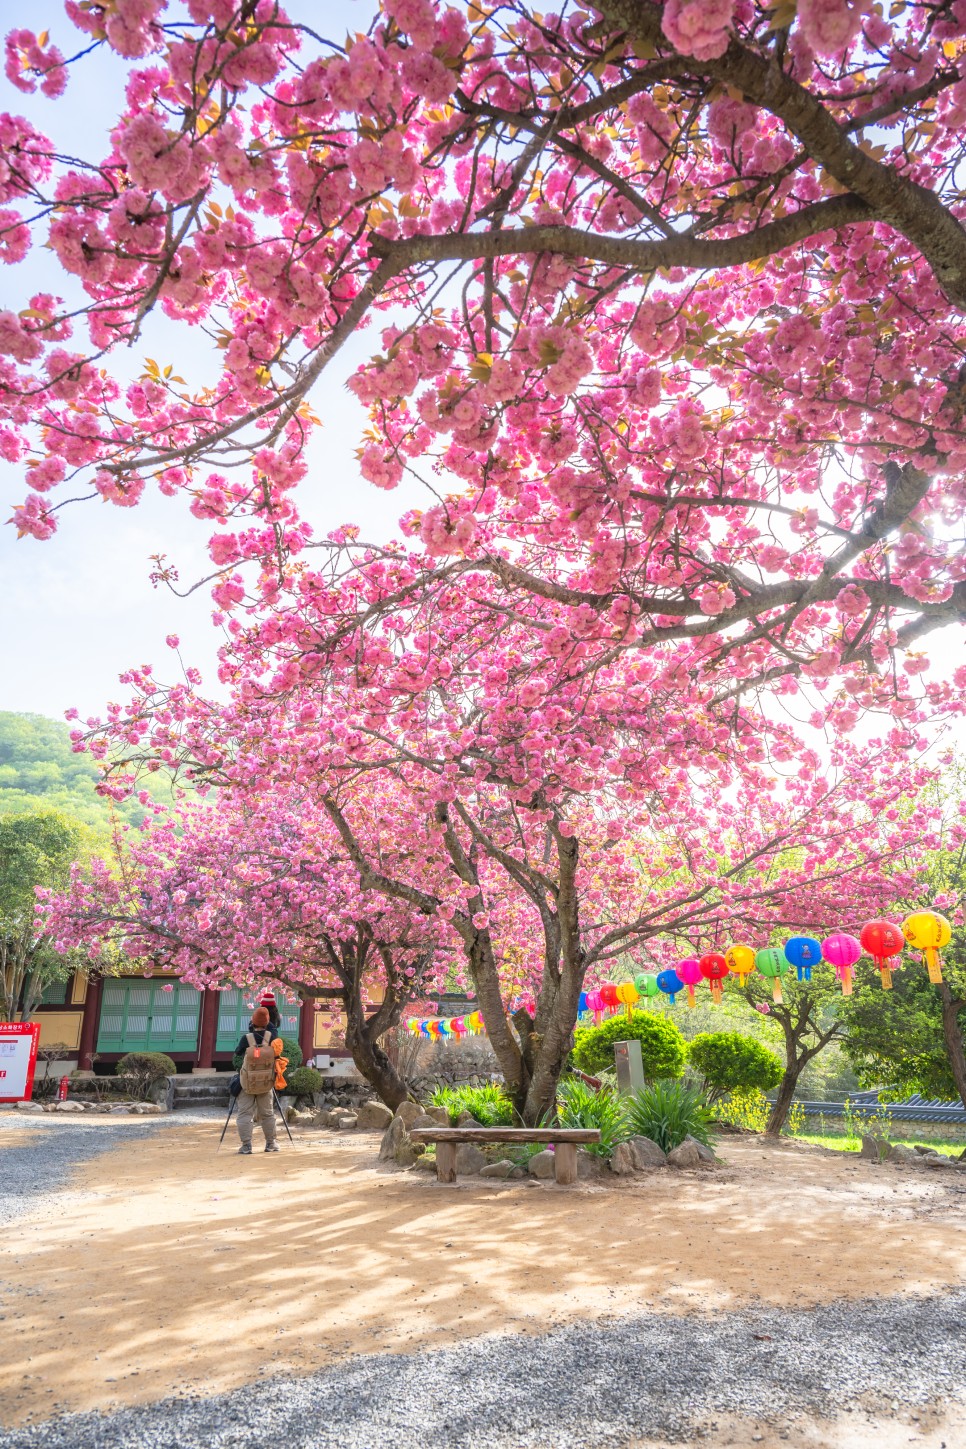 순천 선암사 겹벚꽃 명소 4월 17일 만개 상태 주말 여행 가기 좋은 곳